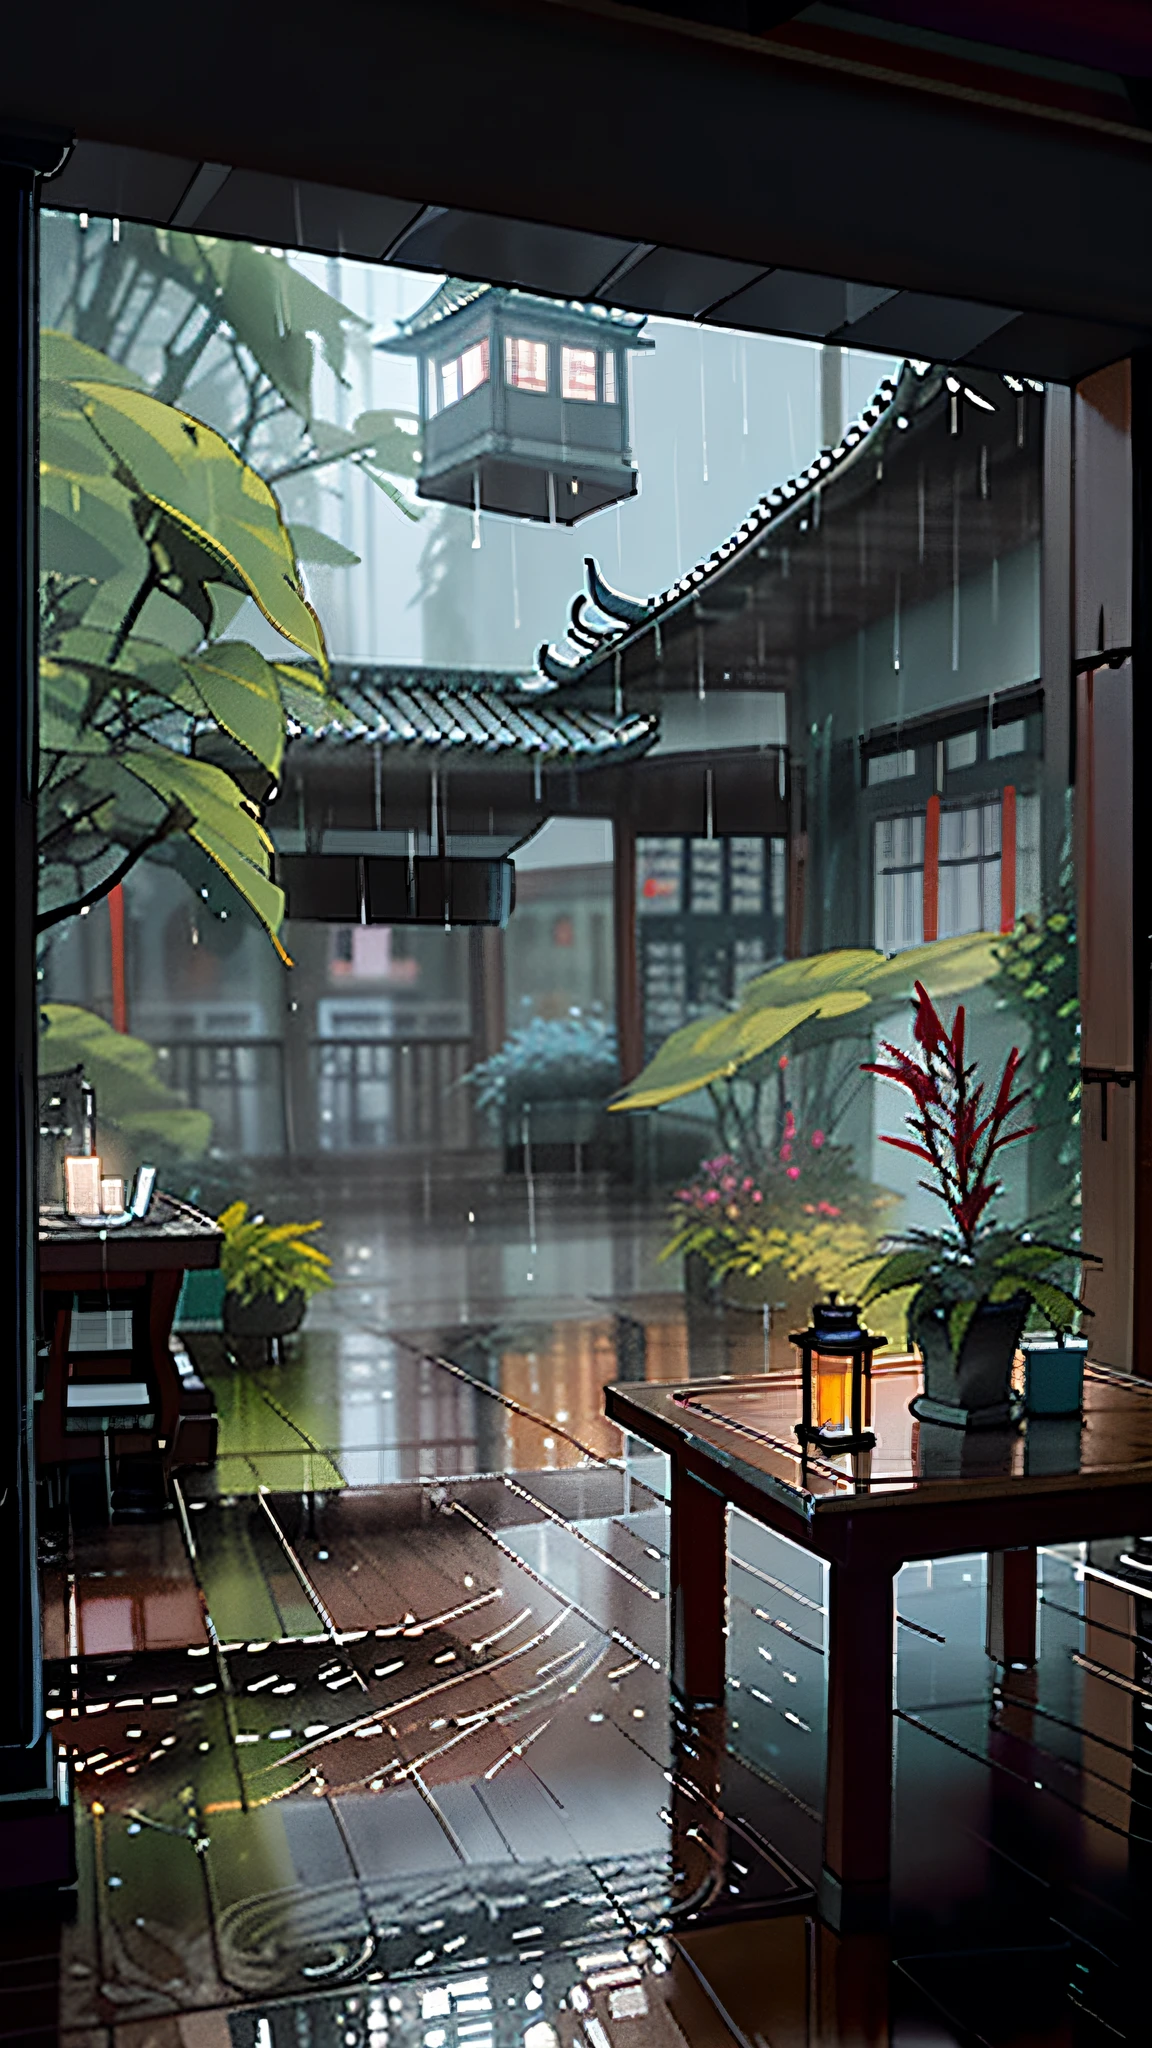 há uma mesa com uma vela em um pátio, Dia chuvoso outside, chuvoso lá fora, tarde chuvosa, Chovendo la fora, inside on a Dia chuvoso, cena chuvosa, atmosfera chuvosa e sombria, in a Ambiente chuvoso, clima chuvoso, por Li Zai, Ambiente chuvoso, Dia chuvoso, tempo chuvoso, by Fei Danxu, Chovendo la fora the window, por Ren Xiong